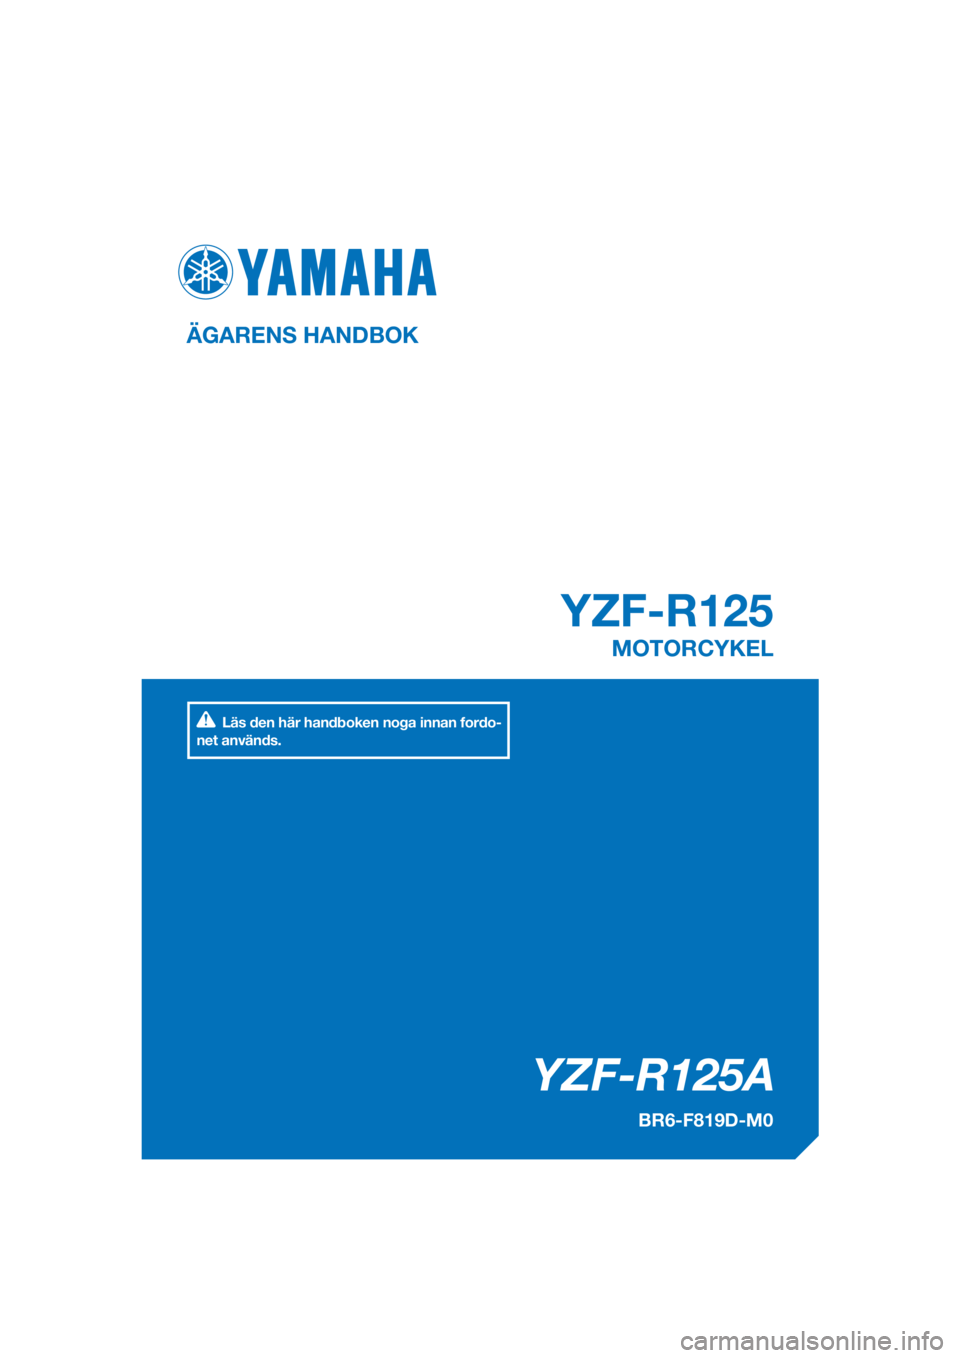 YAMAHA YZF-R125 2017  Bruksanvisningar (in Swedish) PANTONE285C
YZF-R125A
YZF-R125
ÄGARENS HANDBOK
BR6-F819D-M0
MOTORCYKEL
[Swedish  (M)]
Läs den här handboken noga innan fordo-
net används. 